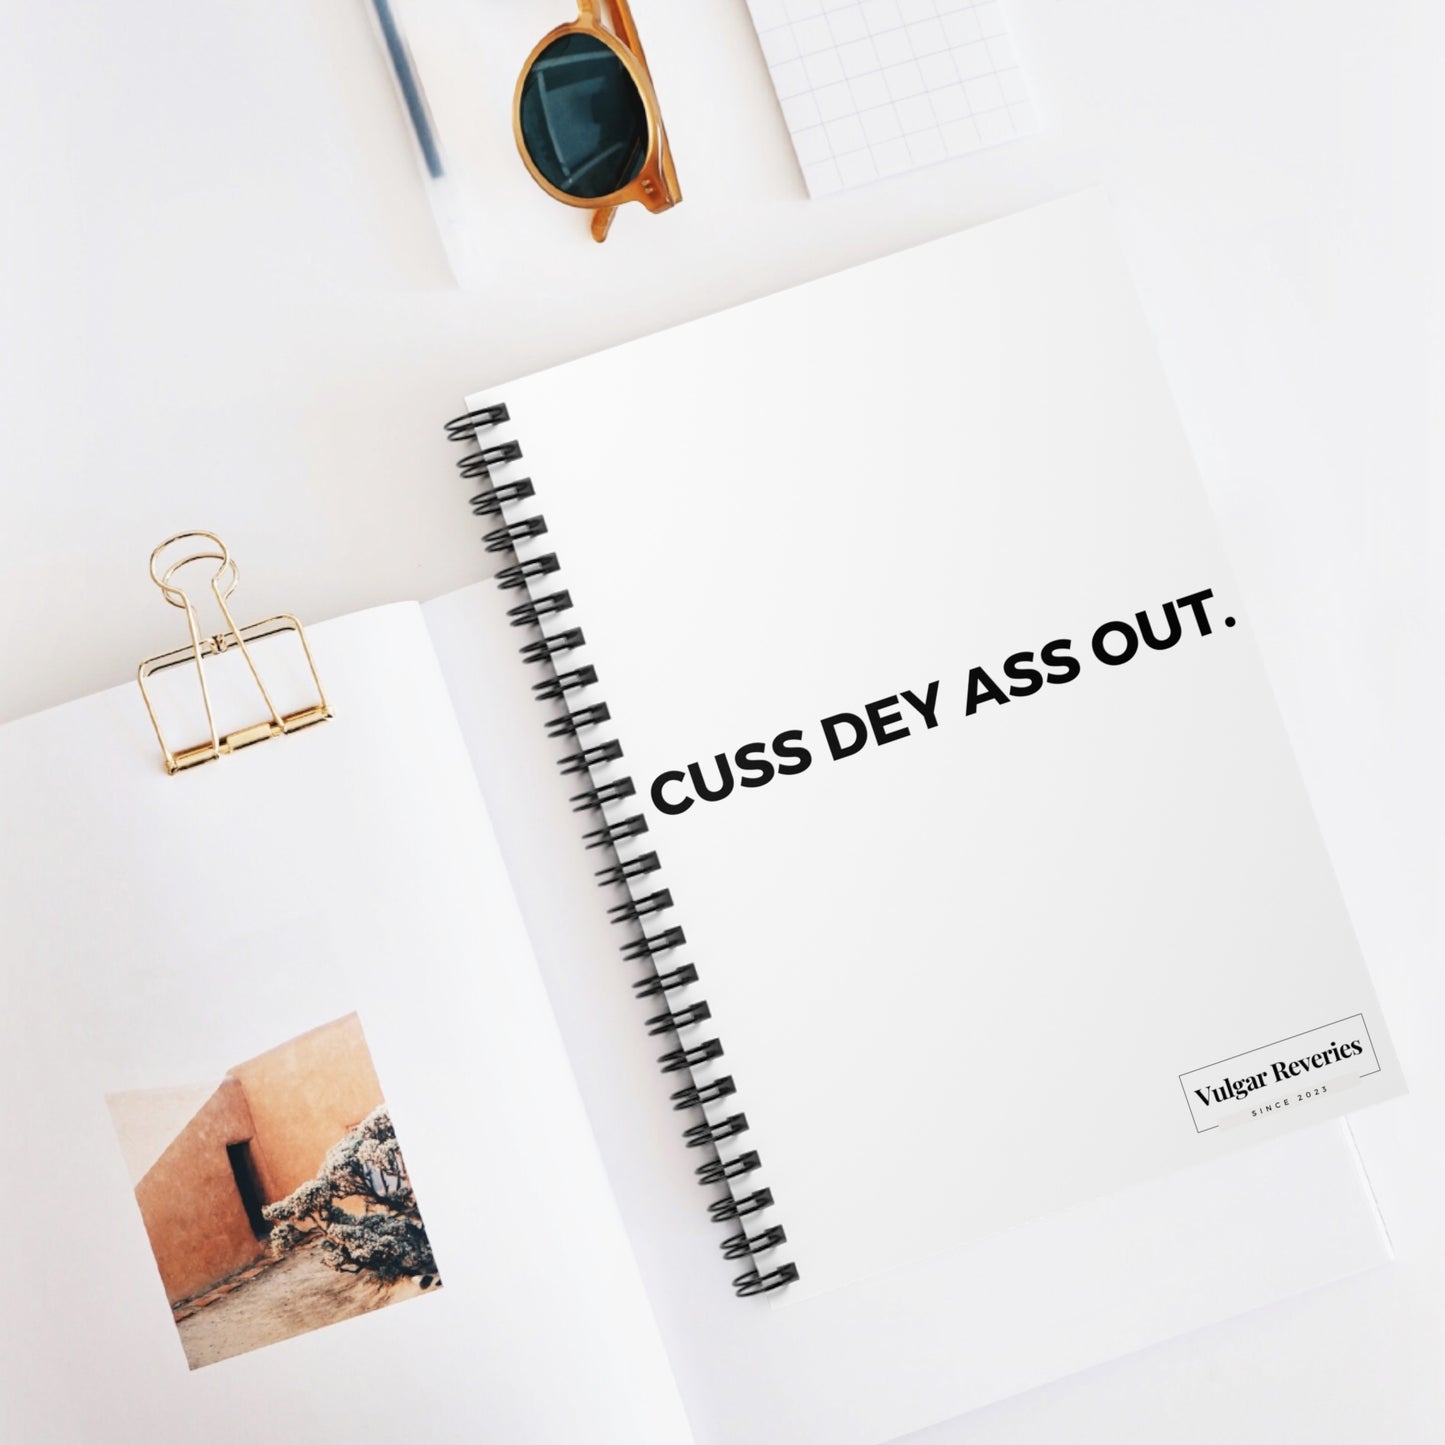 Cuss Dey Ass Out -Spiral Notebook - Ruled Line